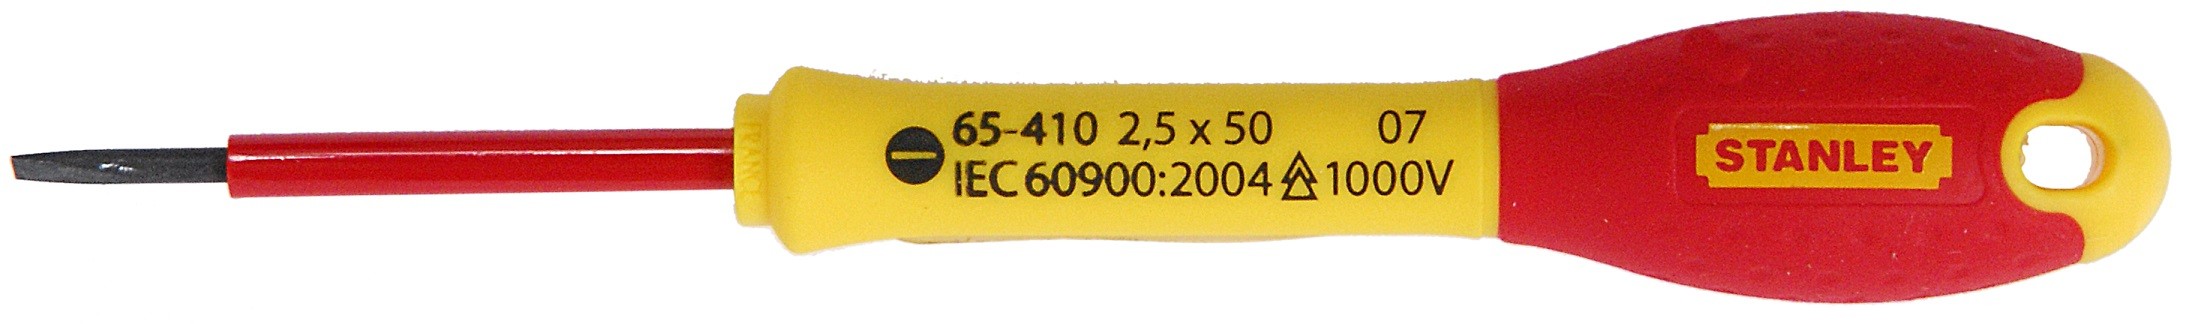 surubelnita izolata fatmax 1000v, 2.5x50mm, 0-65-410 stanley